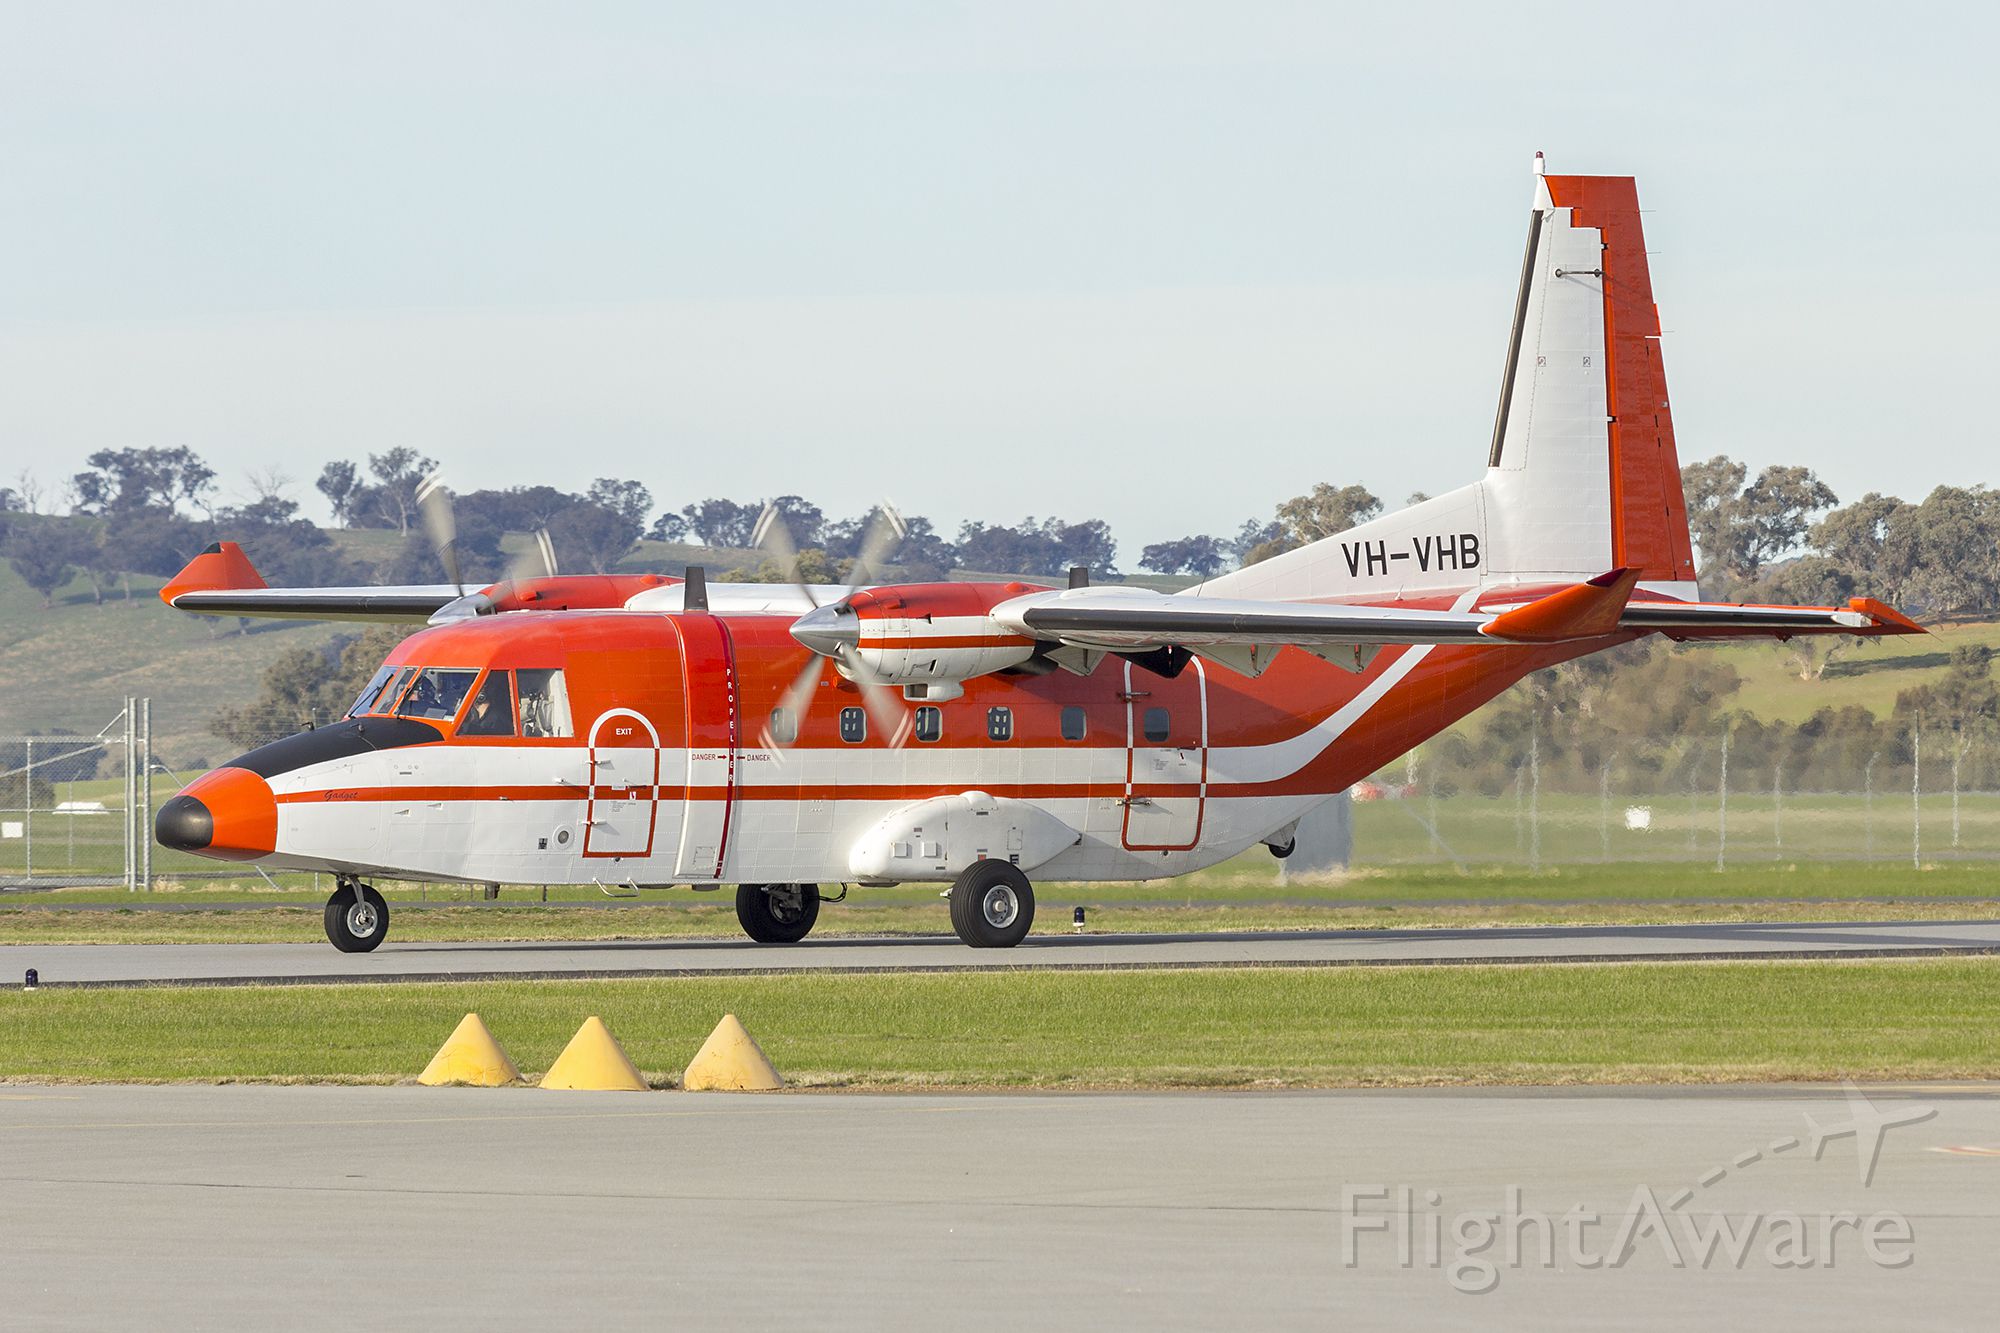 NURTANIO Aviocar (VH-VHB) - Skytraders (VH-VHB) CASA C-212-400 Aviocar at Wagga Wagga Airport